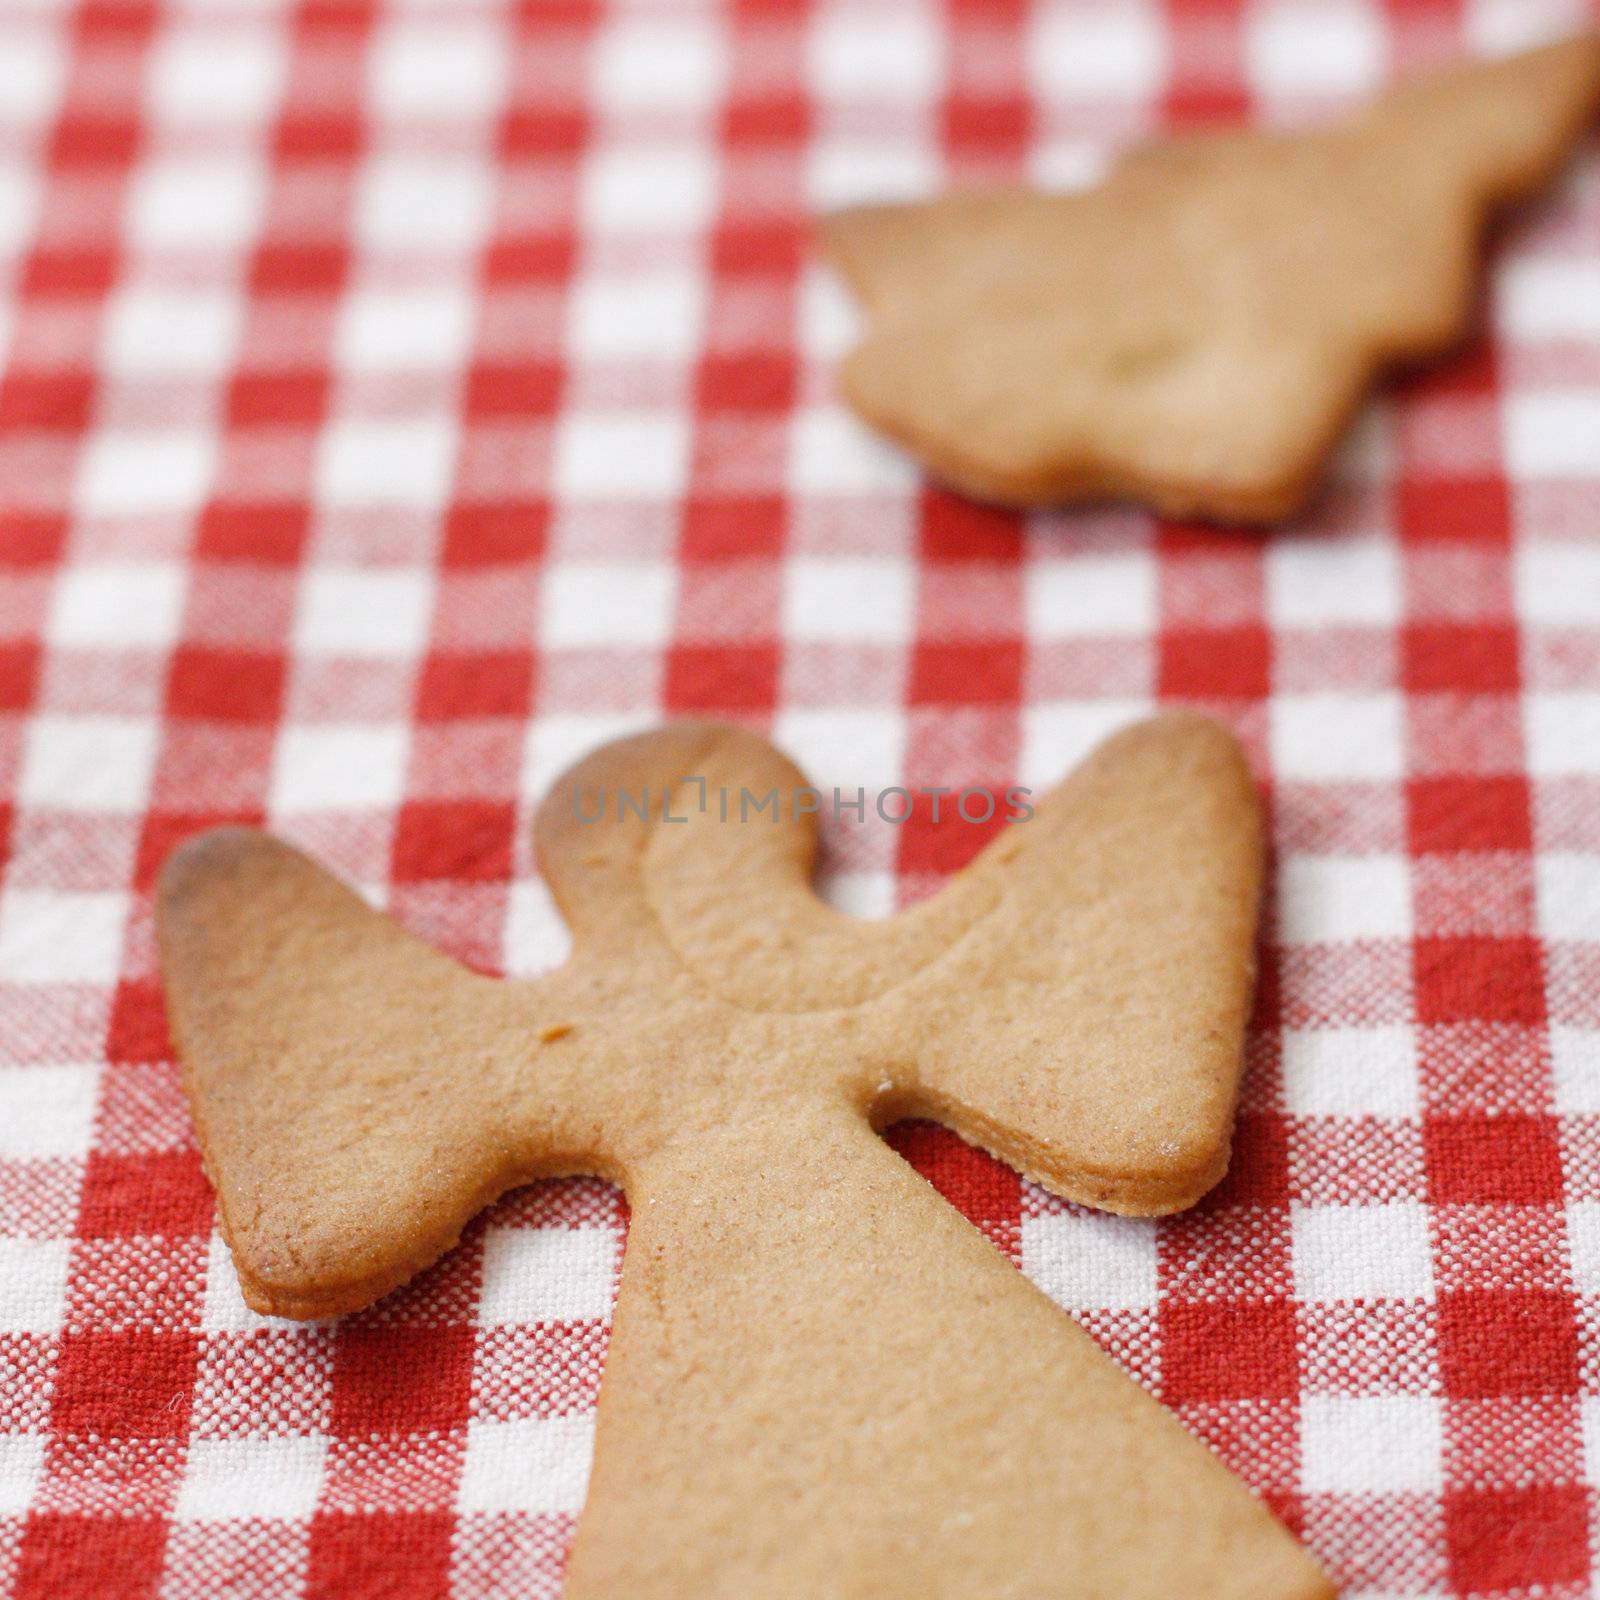 Gingerbread cookies by leeser